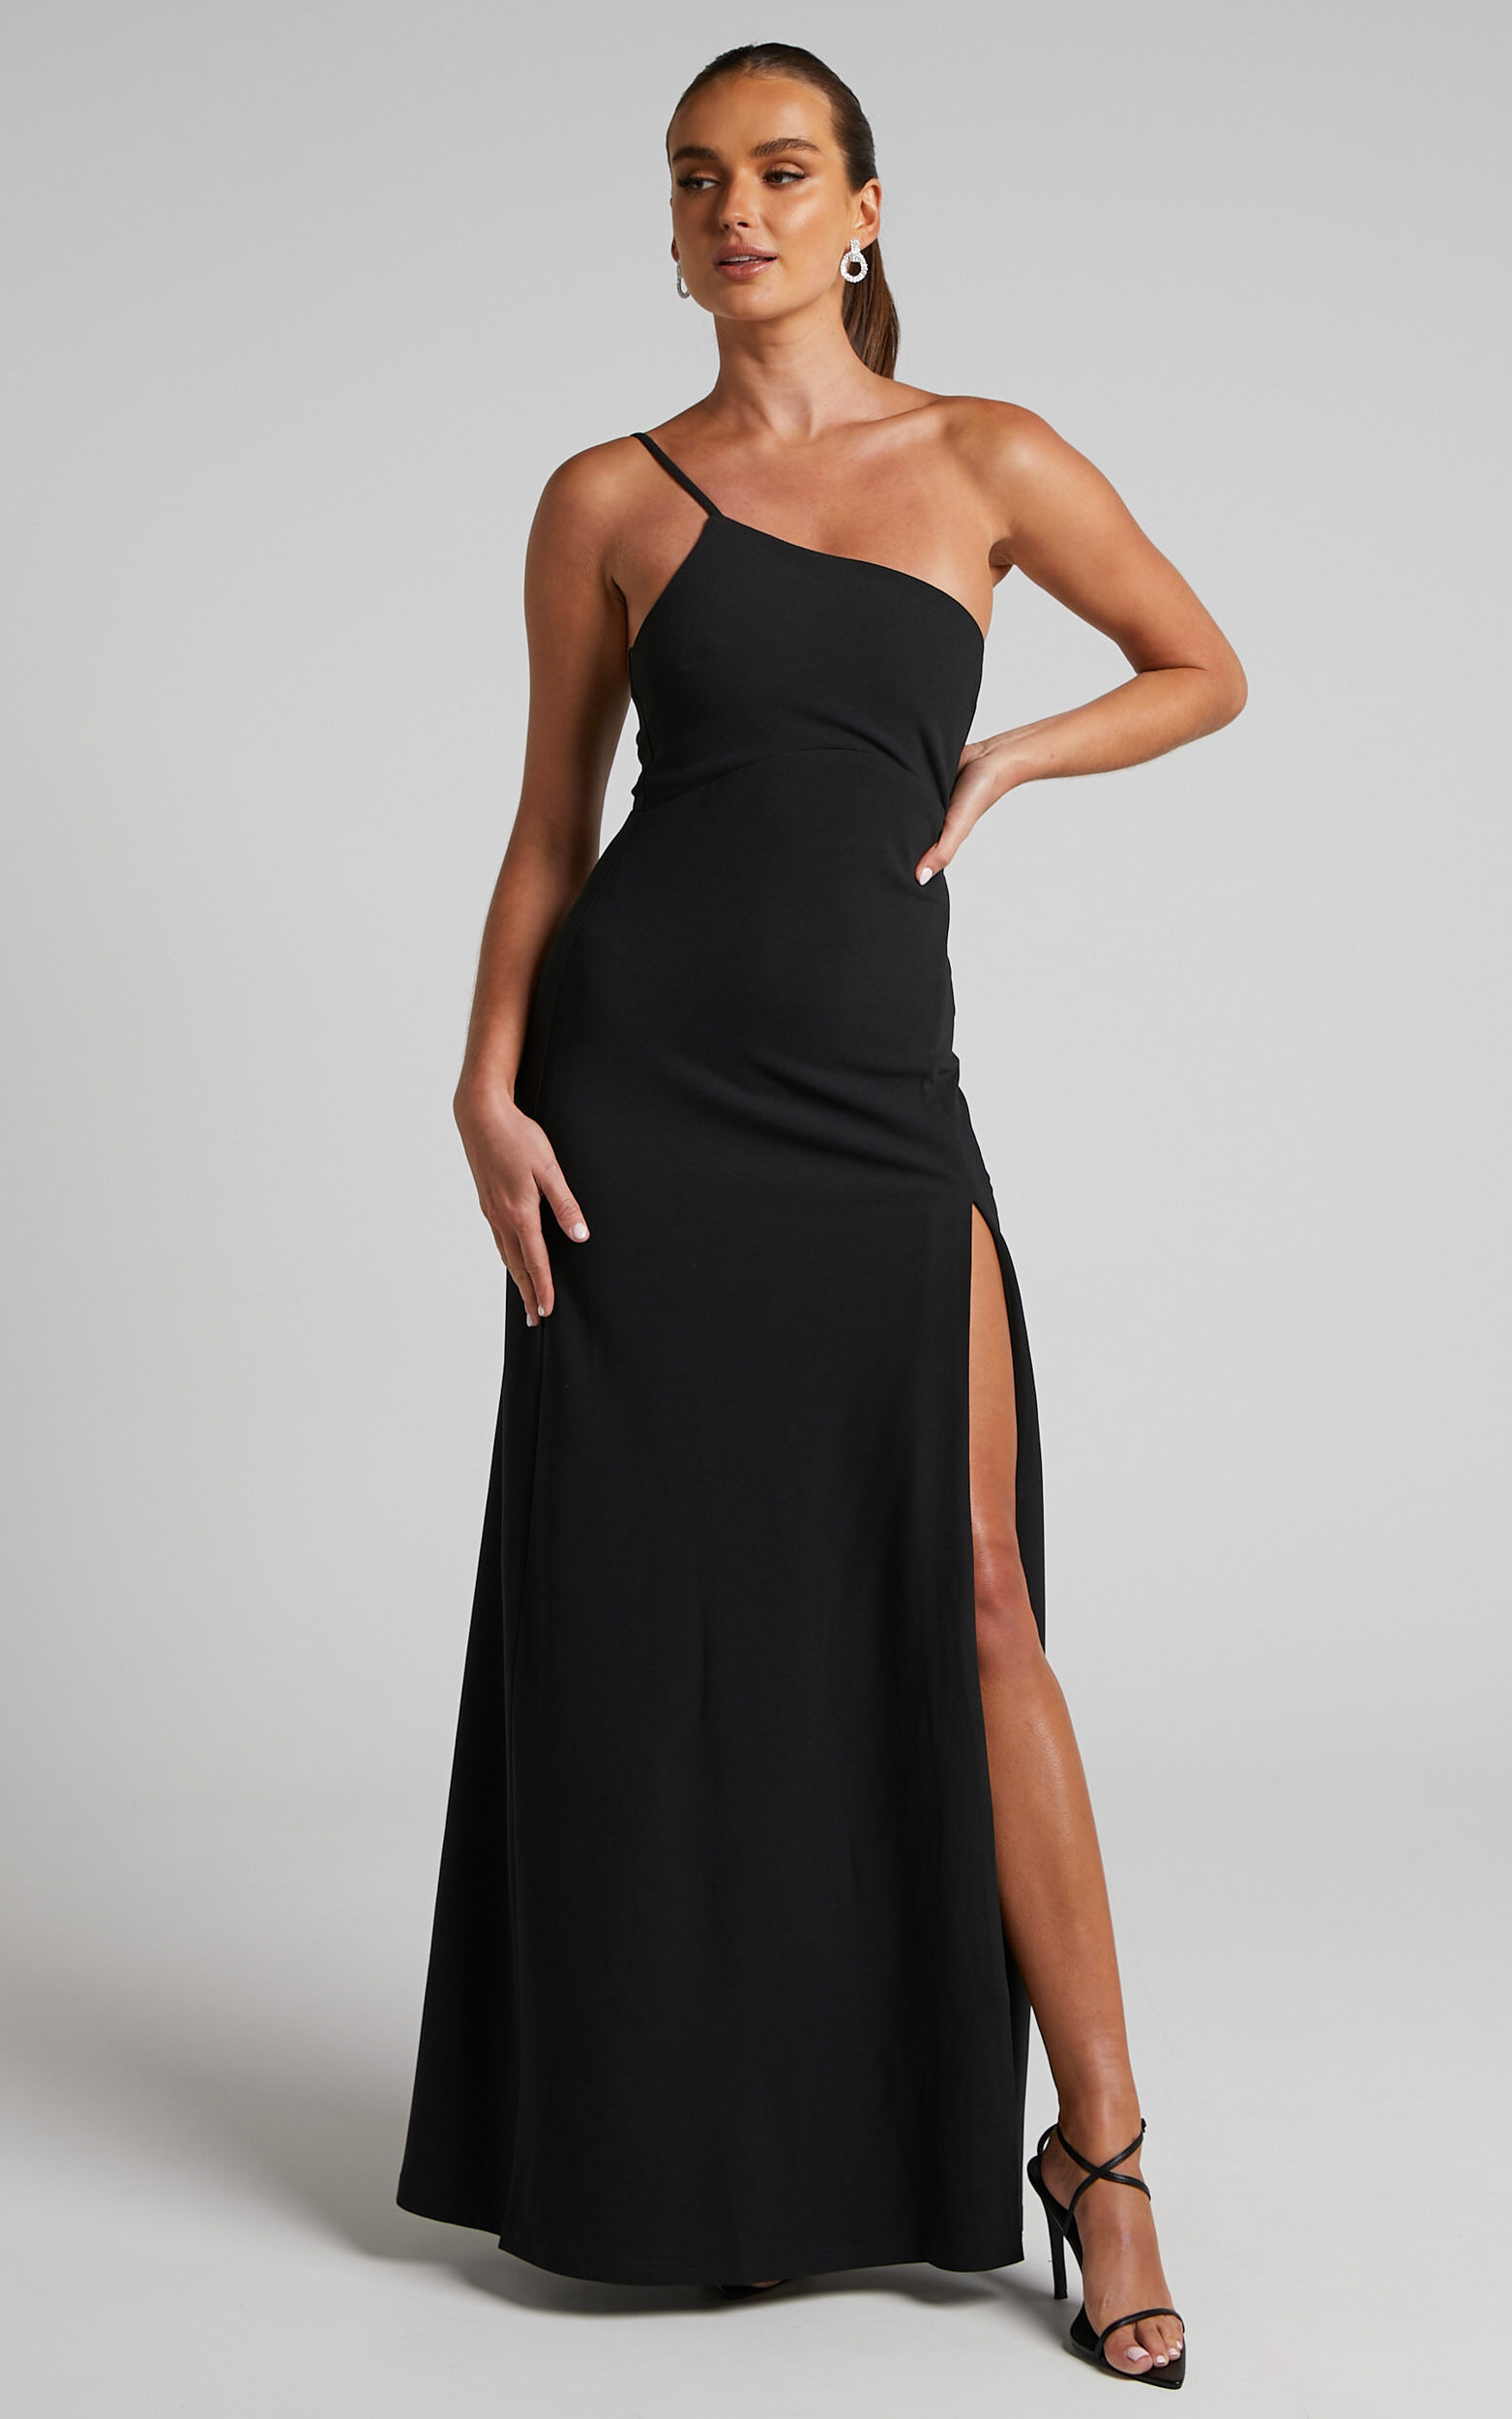 Magnaye Maxi Dress - One Shoulder Thigh Split Dress in Black - 06, BLK1